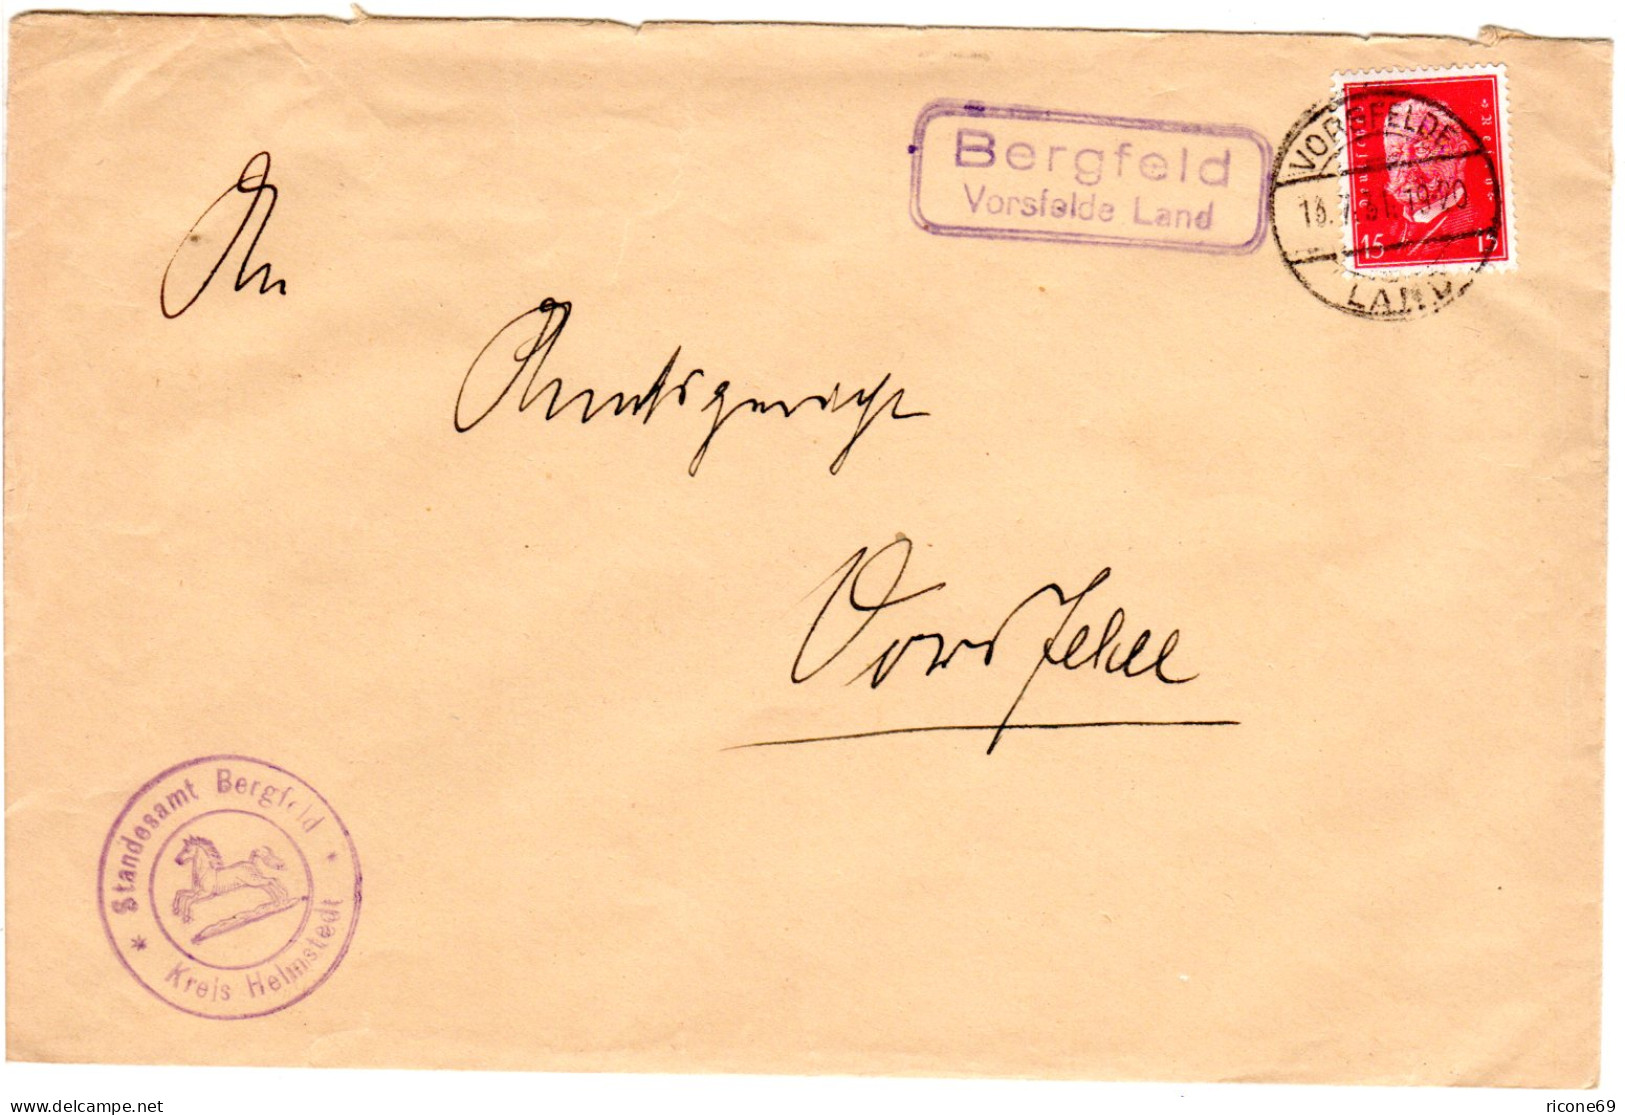 DR 1931, Landpoststpl. BERGFELD Vorsfelde Land Auf Brief M. 15 Pf. - Lettres & Documents